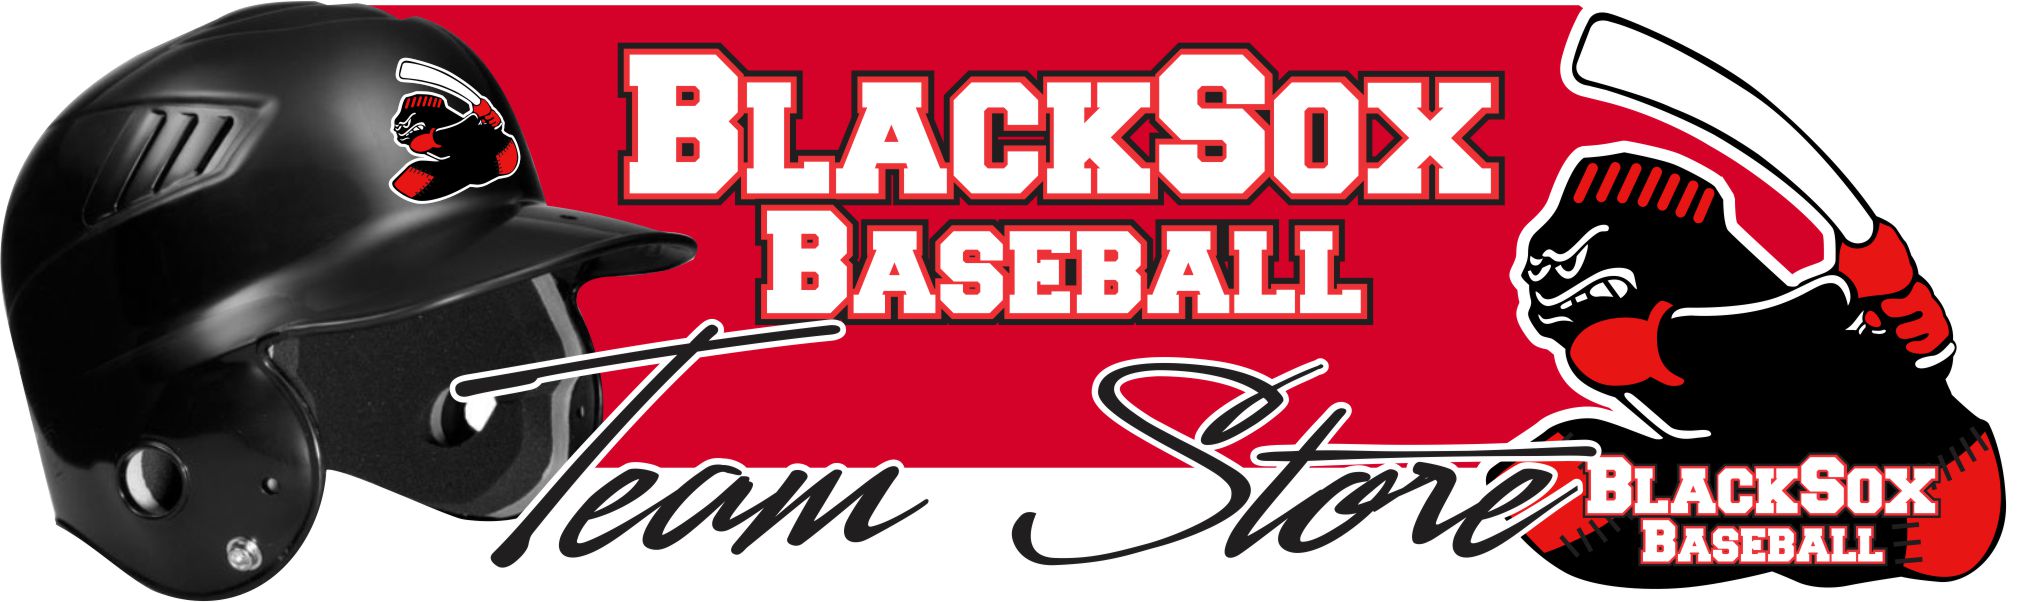 Murfreesboro BlackSox Baseball Team Store Banner